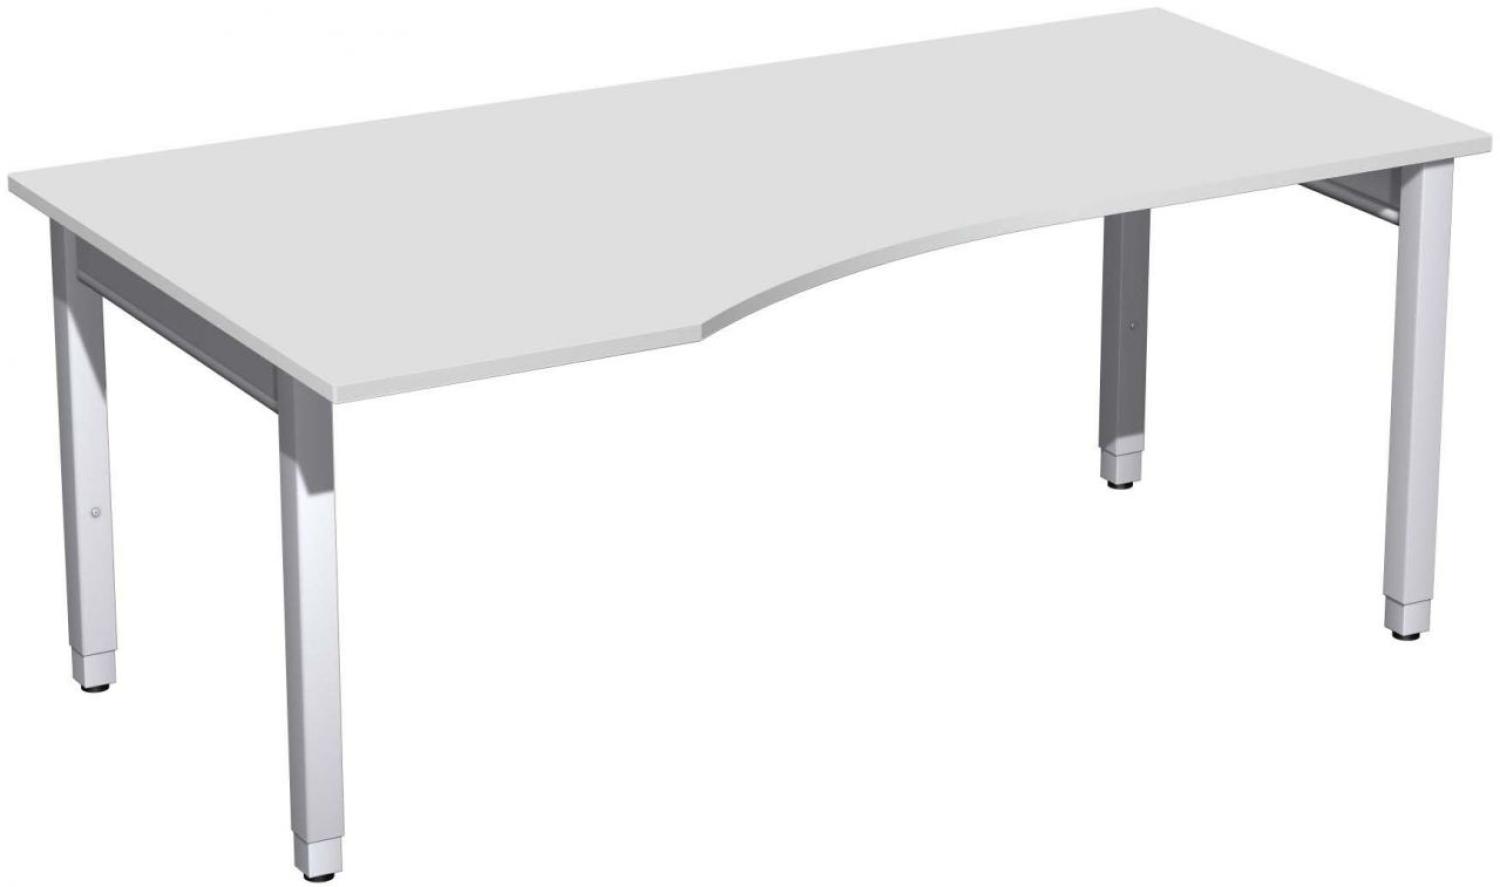 PC-Schreibtisch '4 Fuß Pro Quadrat' links höhenverstellbar, 180x100x68-86cm, Lichtgrau / Silber Bild 1